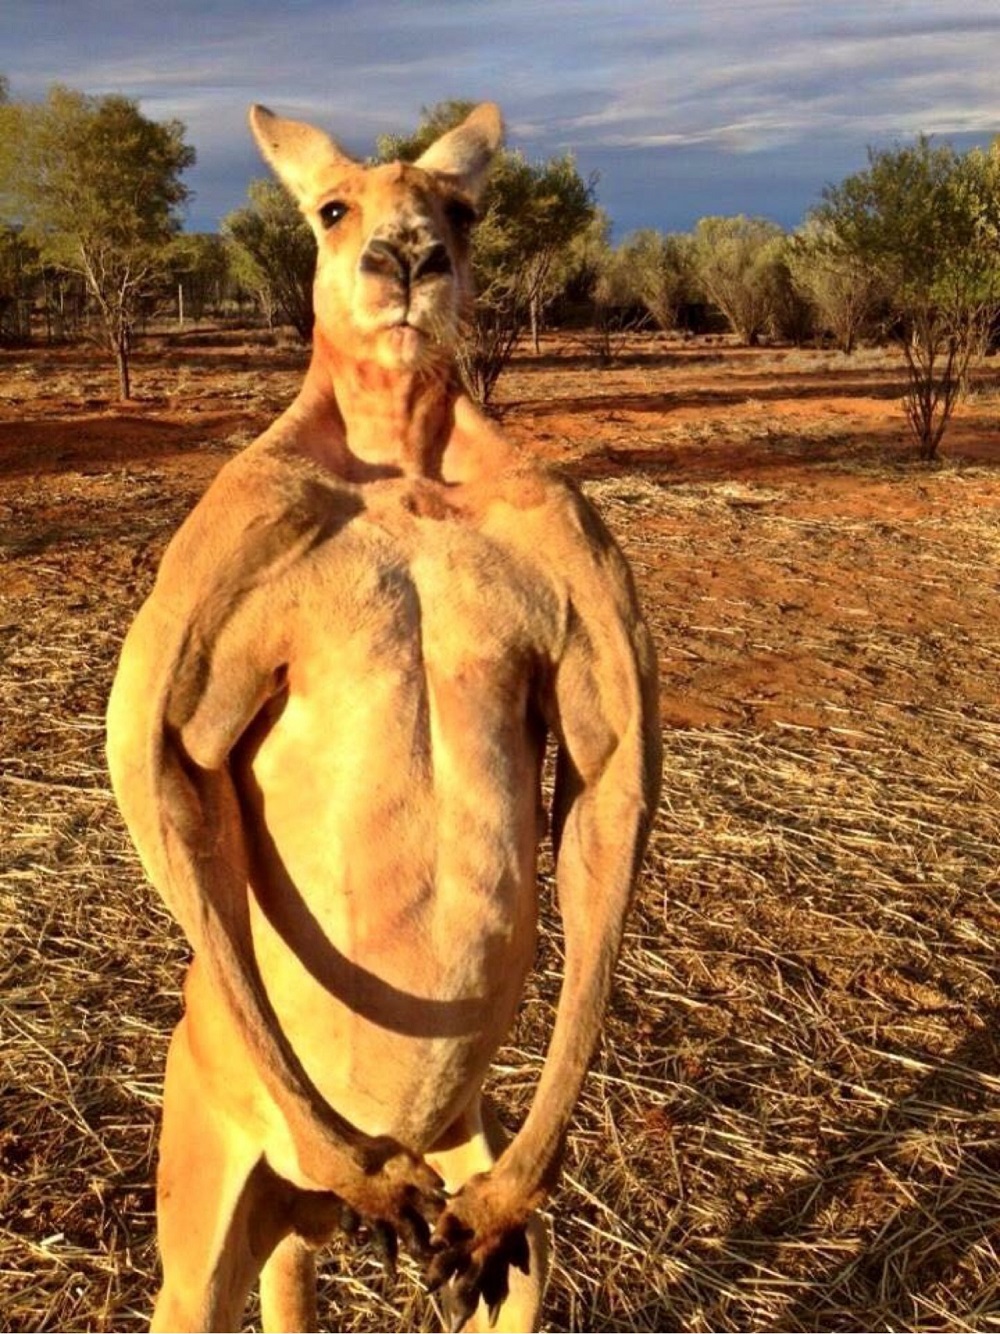 Strong and big kangaroo